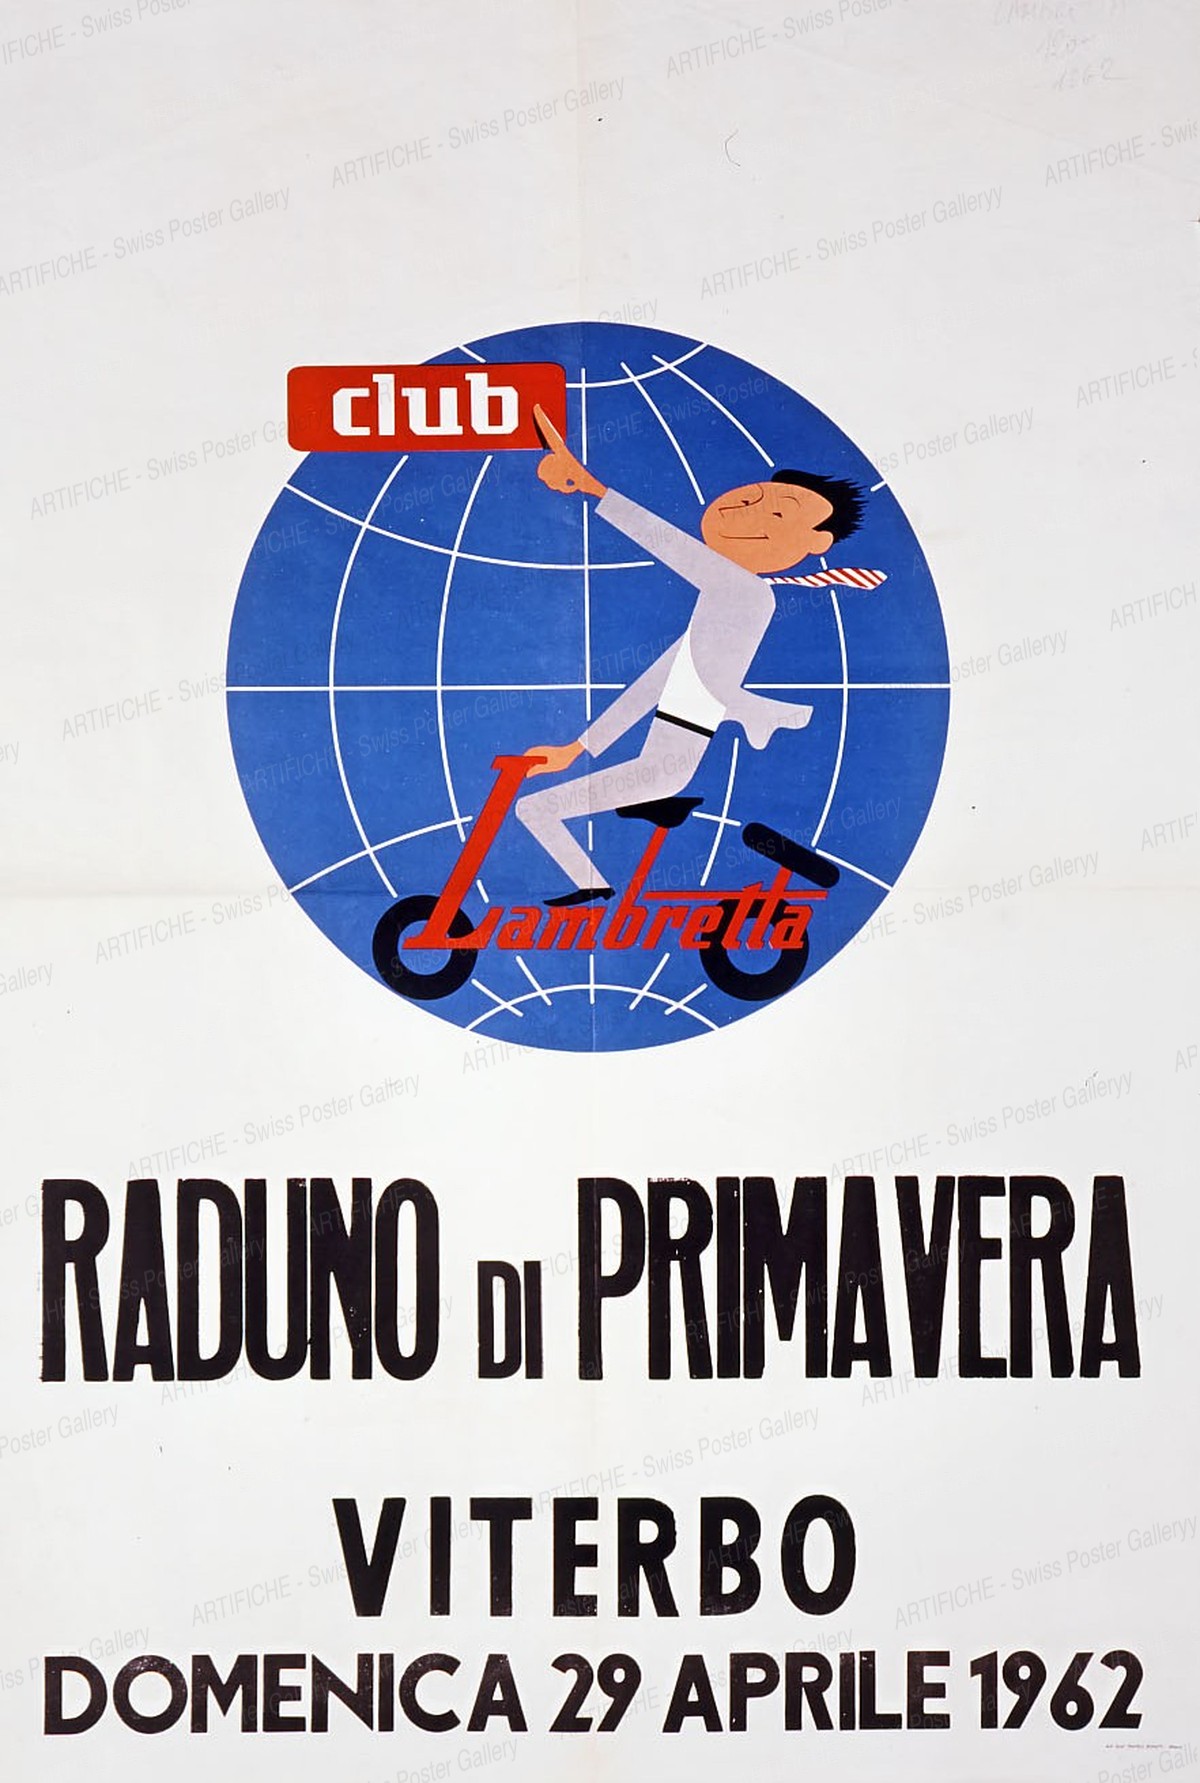 Club Lambretta – RADUNO DI PRIMAVERA VITERBO 1962, Milano Flle Bonetti